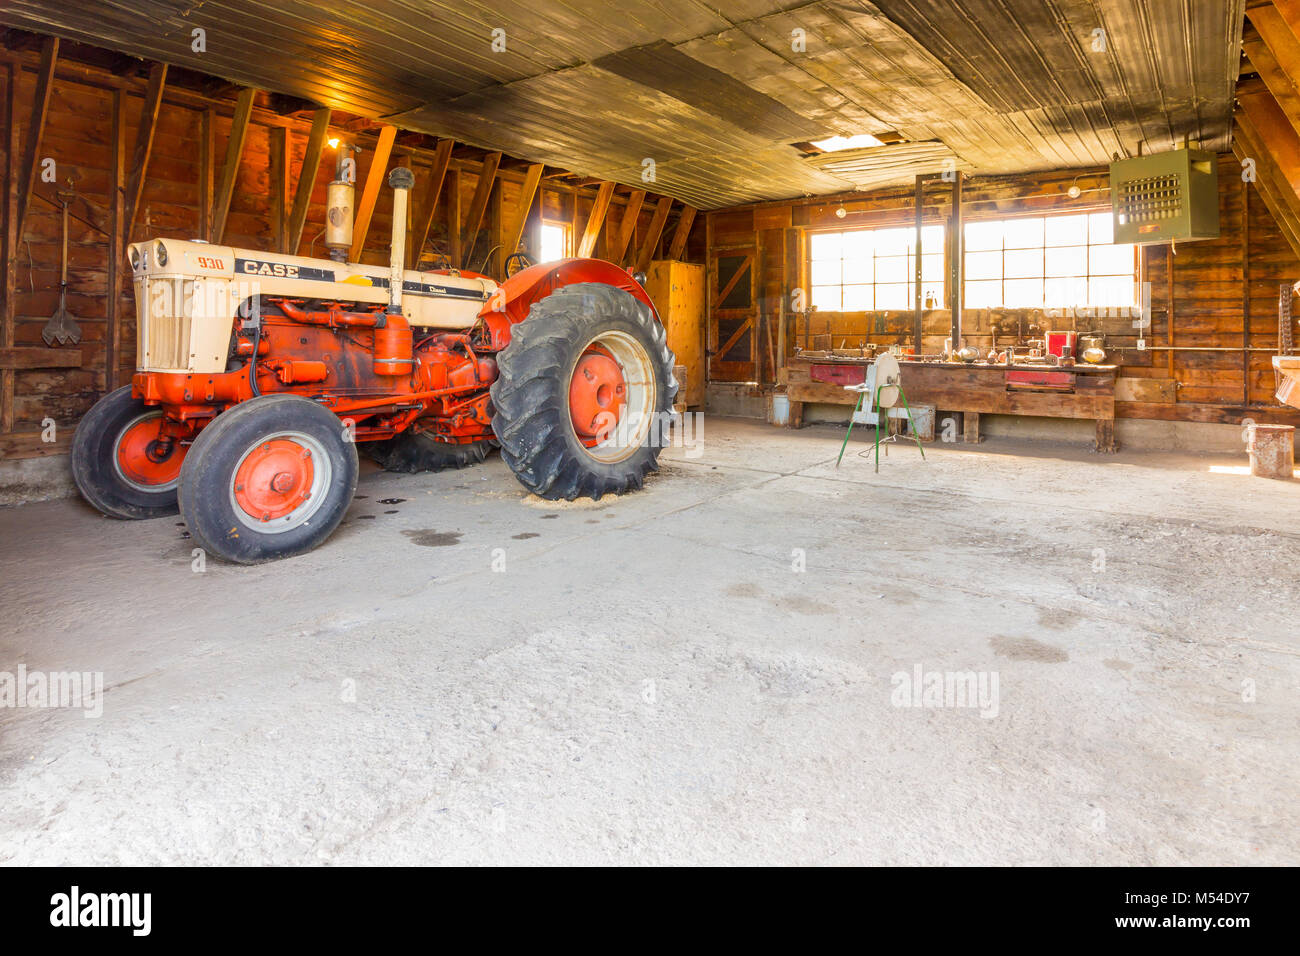 Bar U Ranch site historique national du tracteur mécanique atelier ld Banque D'Images